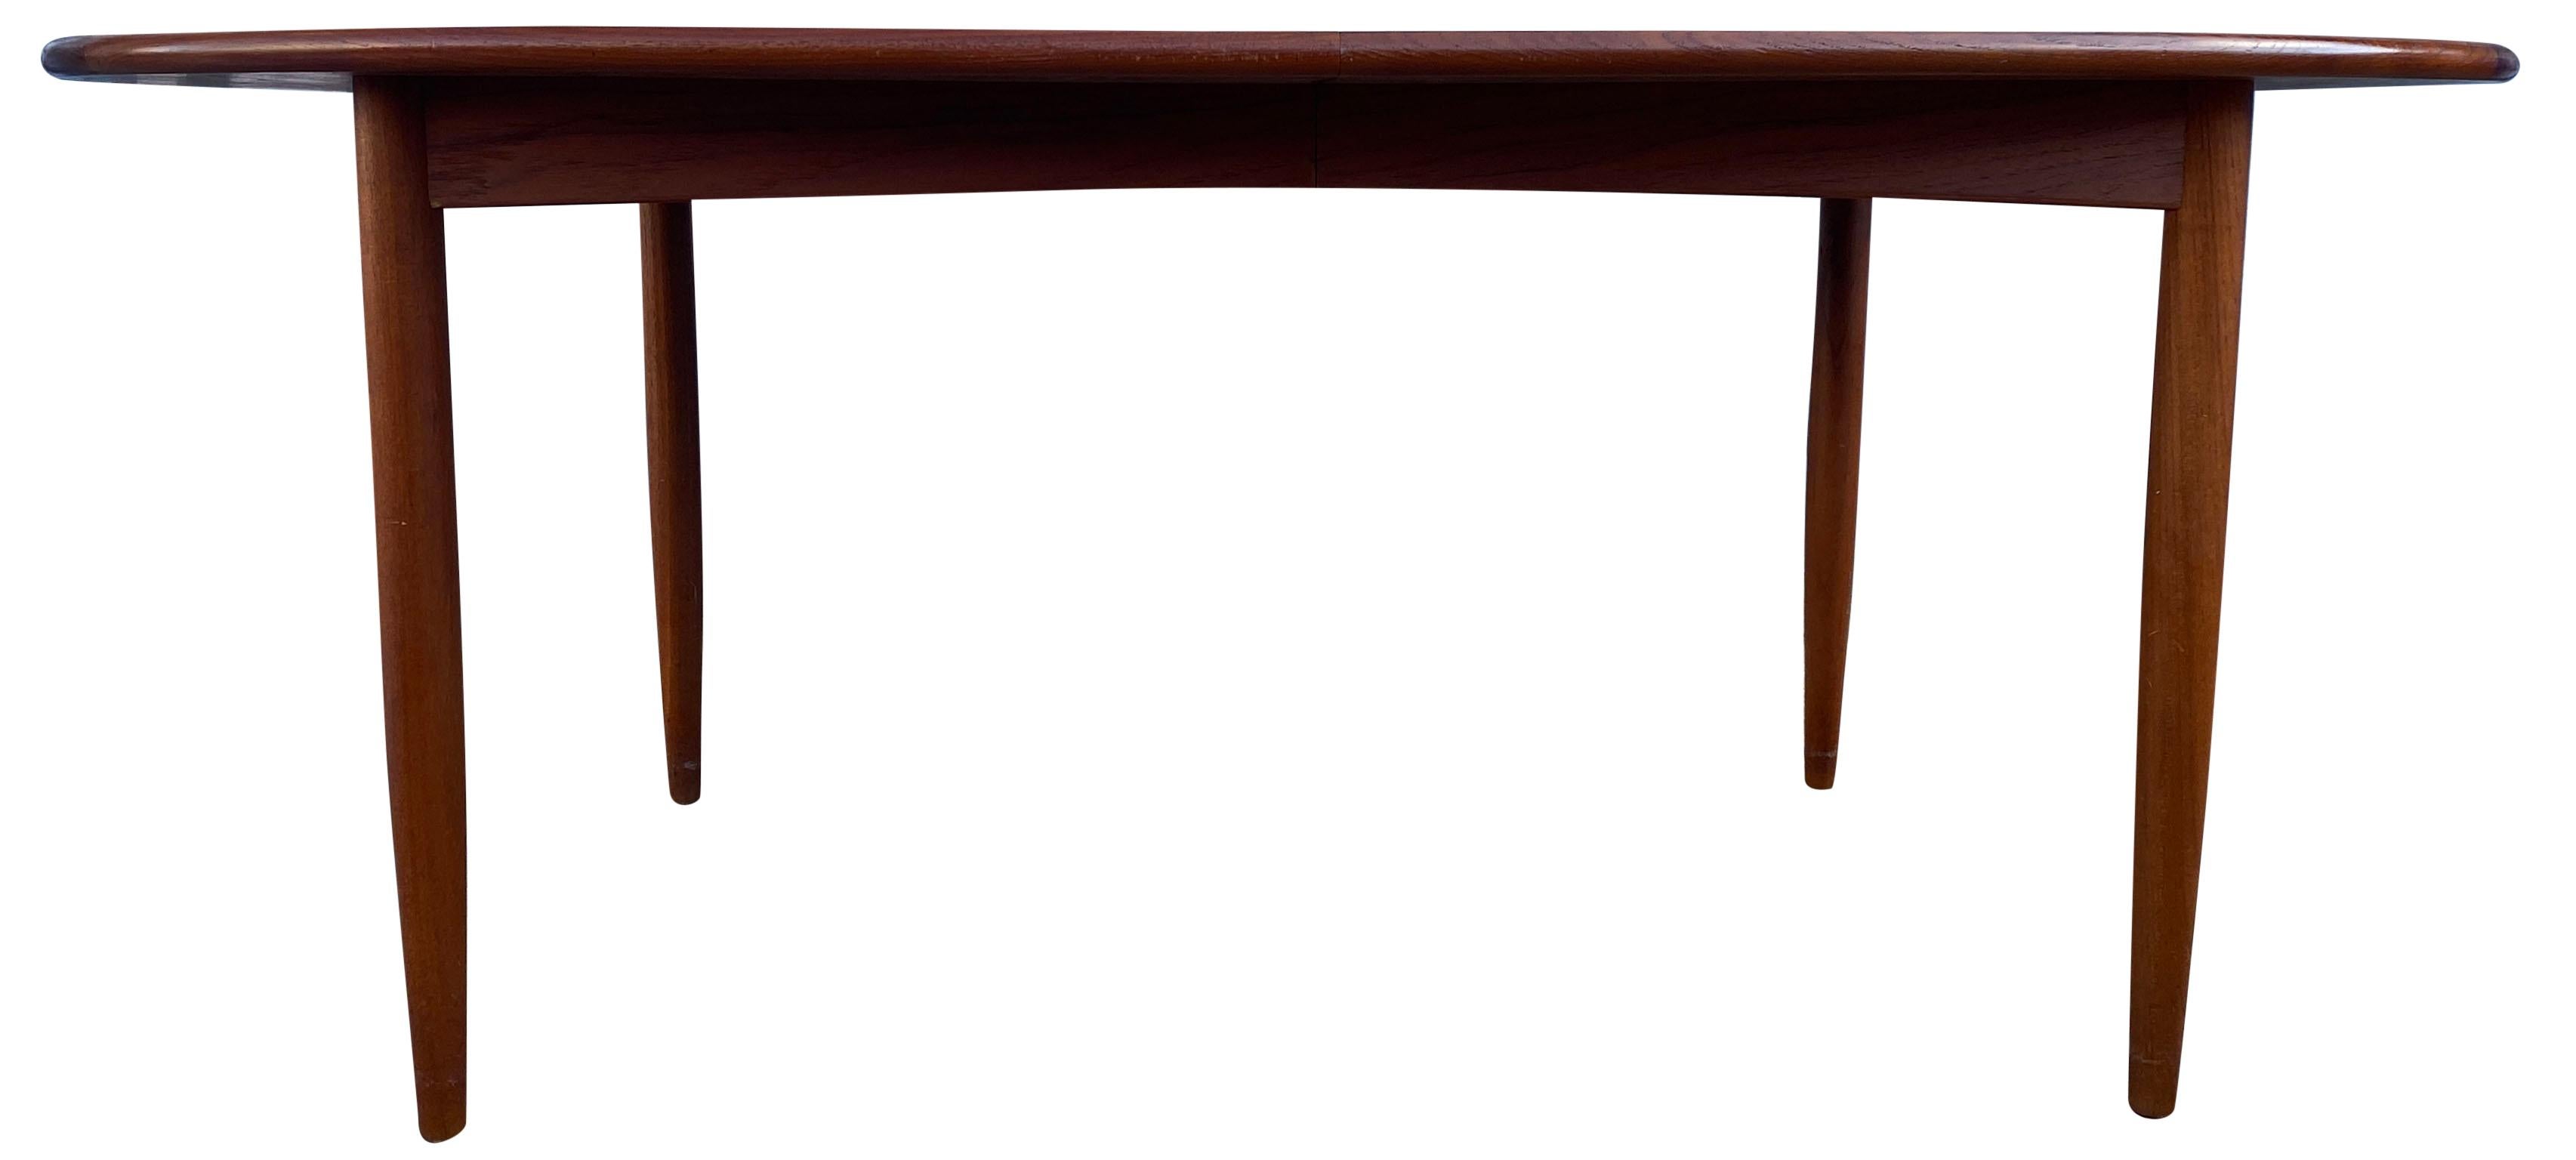 Mid-Century Modern Midcentury Elliptical Large Oval Danish Teak Expandable Dining Table '3' Leaves